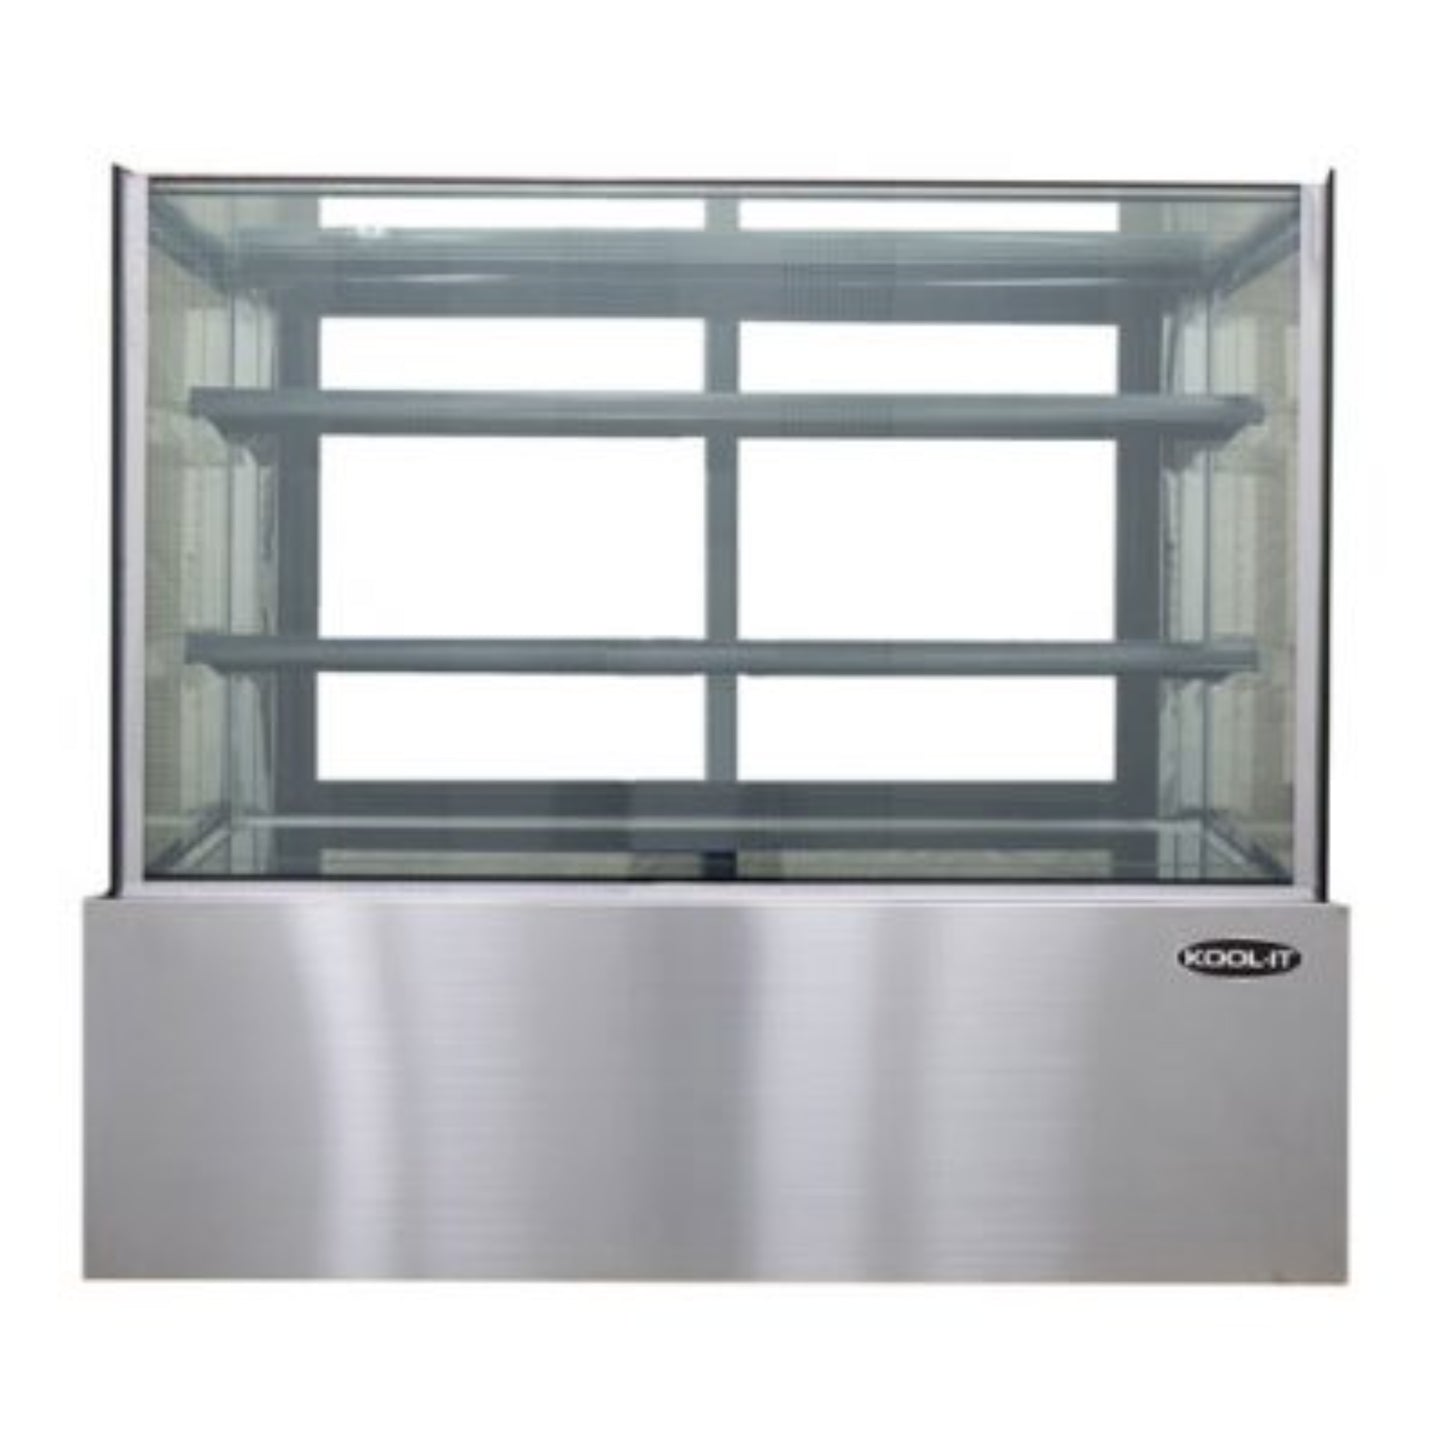 Kool-It KBF-36 36" Refrigerated Flat Glass Display Case